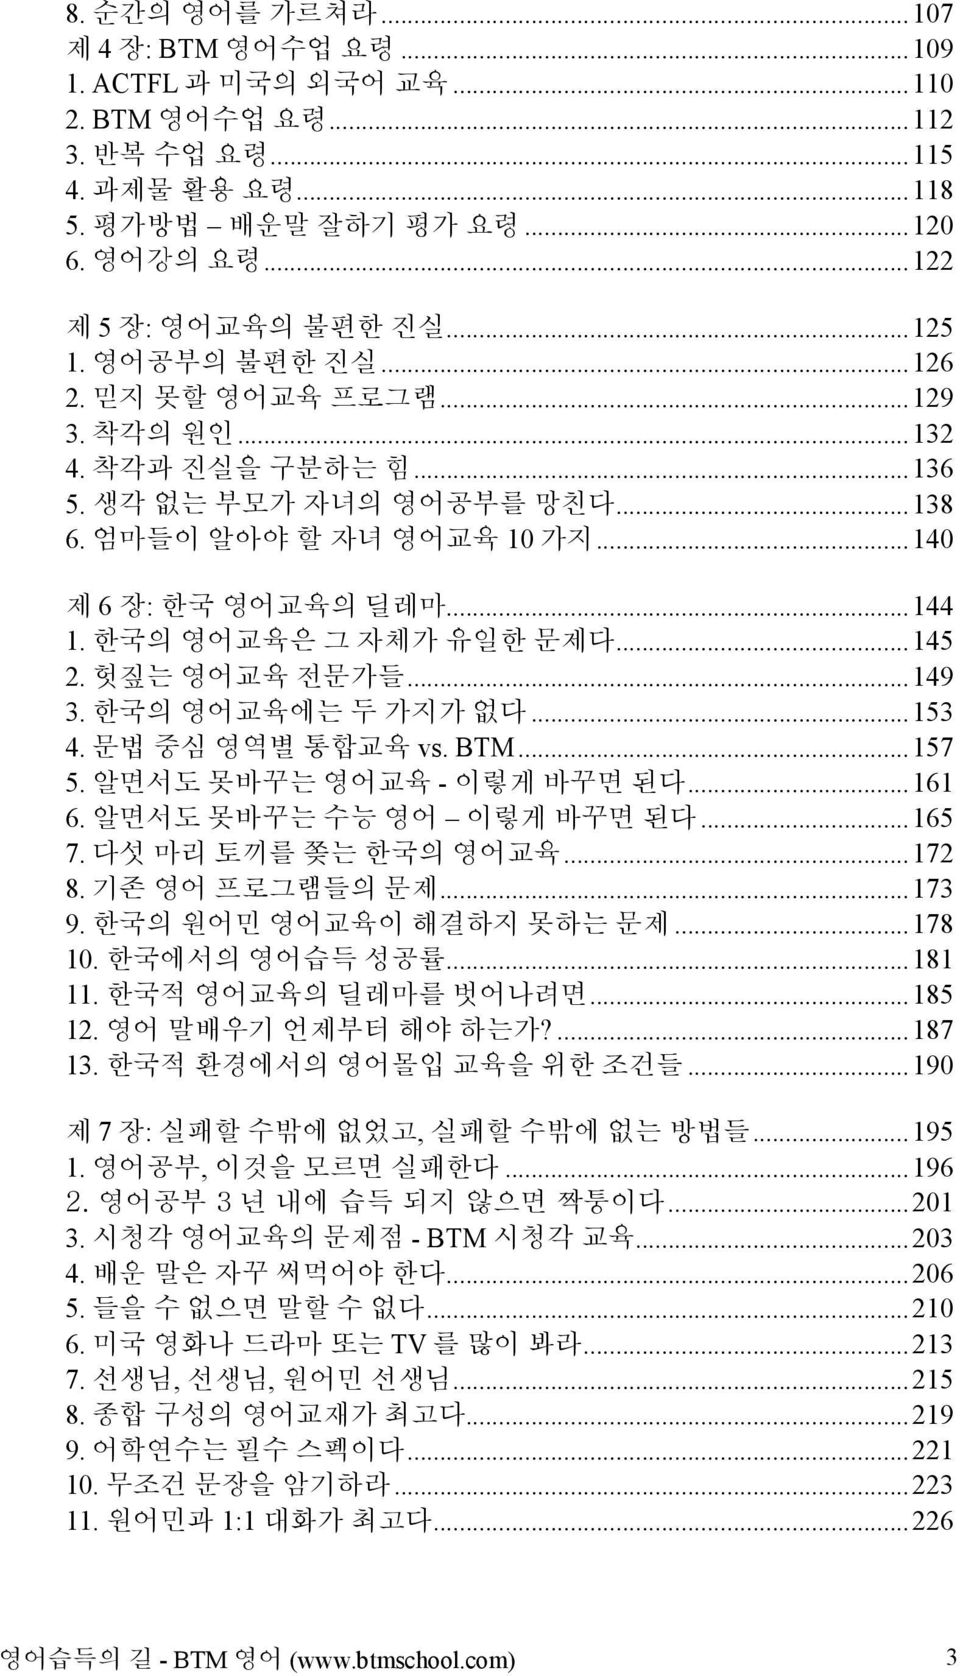 한국의 영어교육은 그 자체가 유일한 문제다...145 2. 헛짚는 영어교육 전문가들...149 3. 한국의 영어교육에는 두 가지가 없다...153 4. 문법 중심 영역별 통합교육 vs. BTM...157 5. 알면서도 못바꾸는 영어교육 - 이렇게 바꾸면 된다...161 6. 알면서도 못바꾸는 수능 영어 이렇게 바꾸면 된다...165 7.